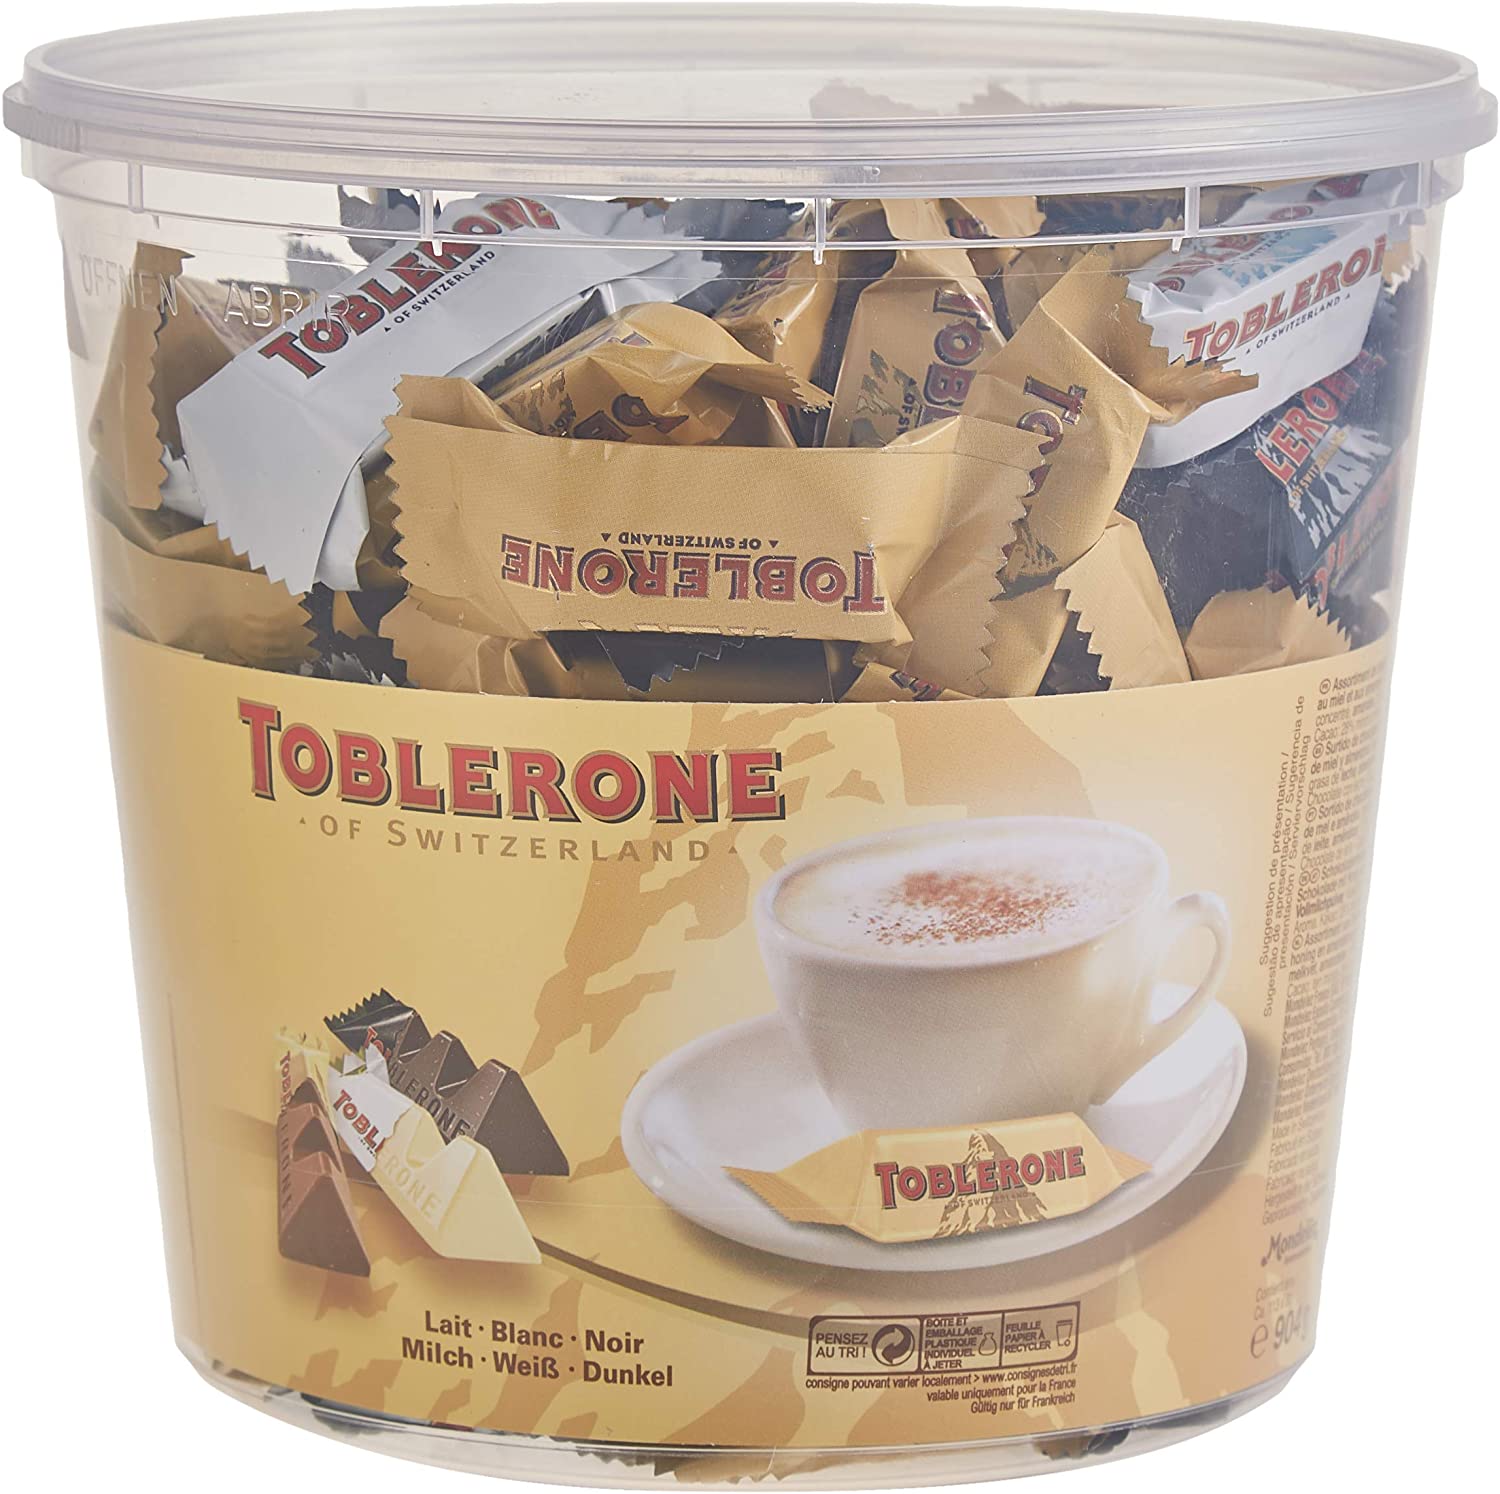 Toblerone - Toblerone mini mix - Surtido de barritas toblerone en tamaño mini en sus tres variedades: chocolate con leche, negro y blanco. Cada barrita va envuelta individualmente. Se sirven en un cubo de plástico re utilizable con tapadera con 113 unidades.